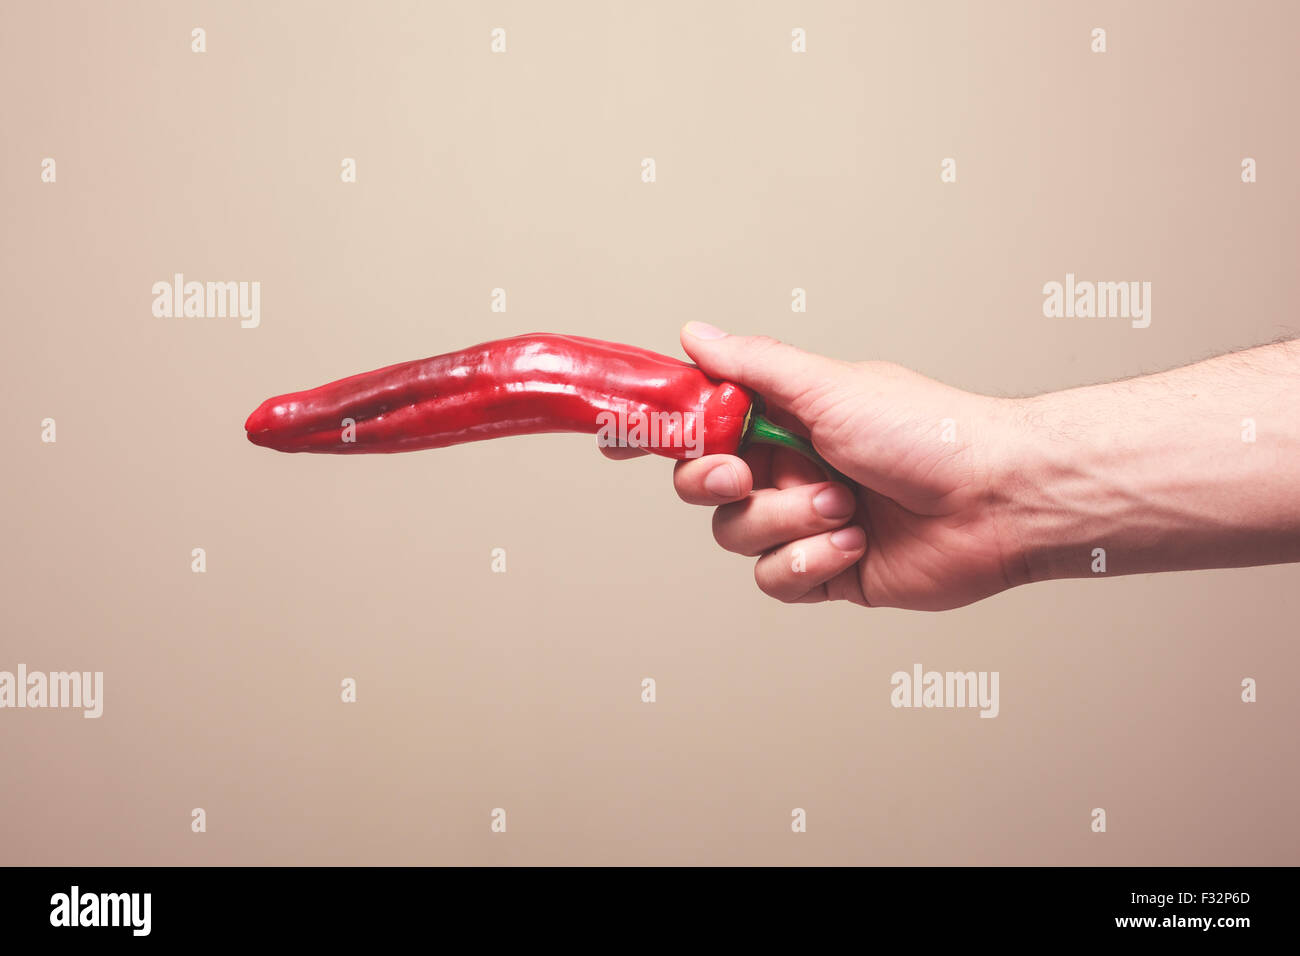 La main d'un homme tient un poivron rouge comme une arme Banque D'Images